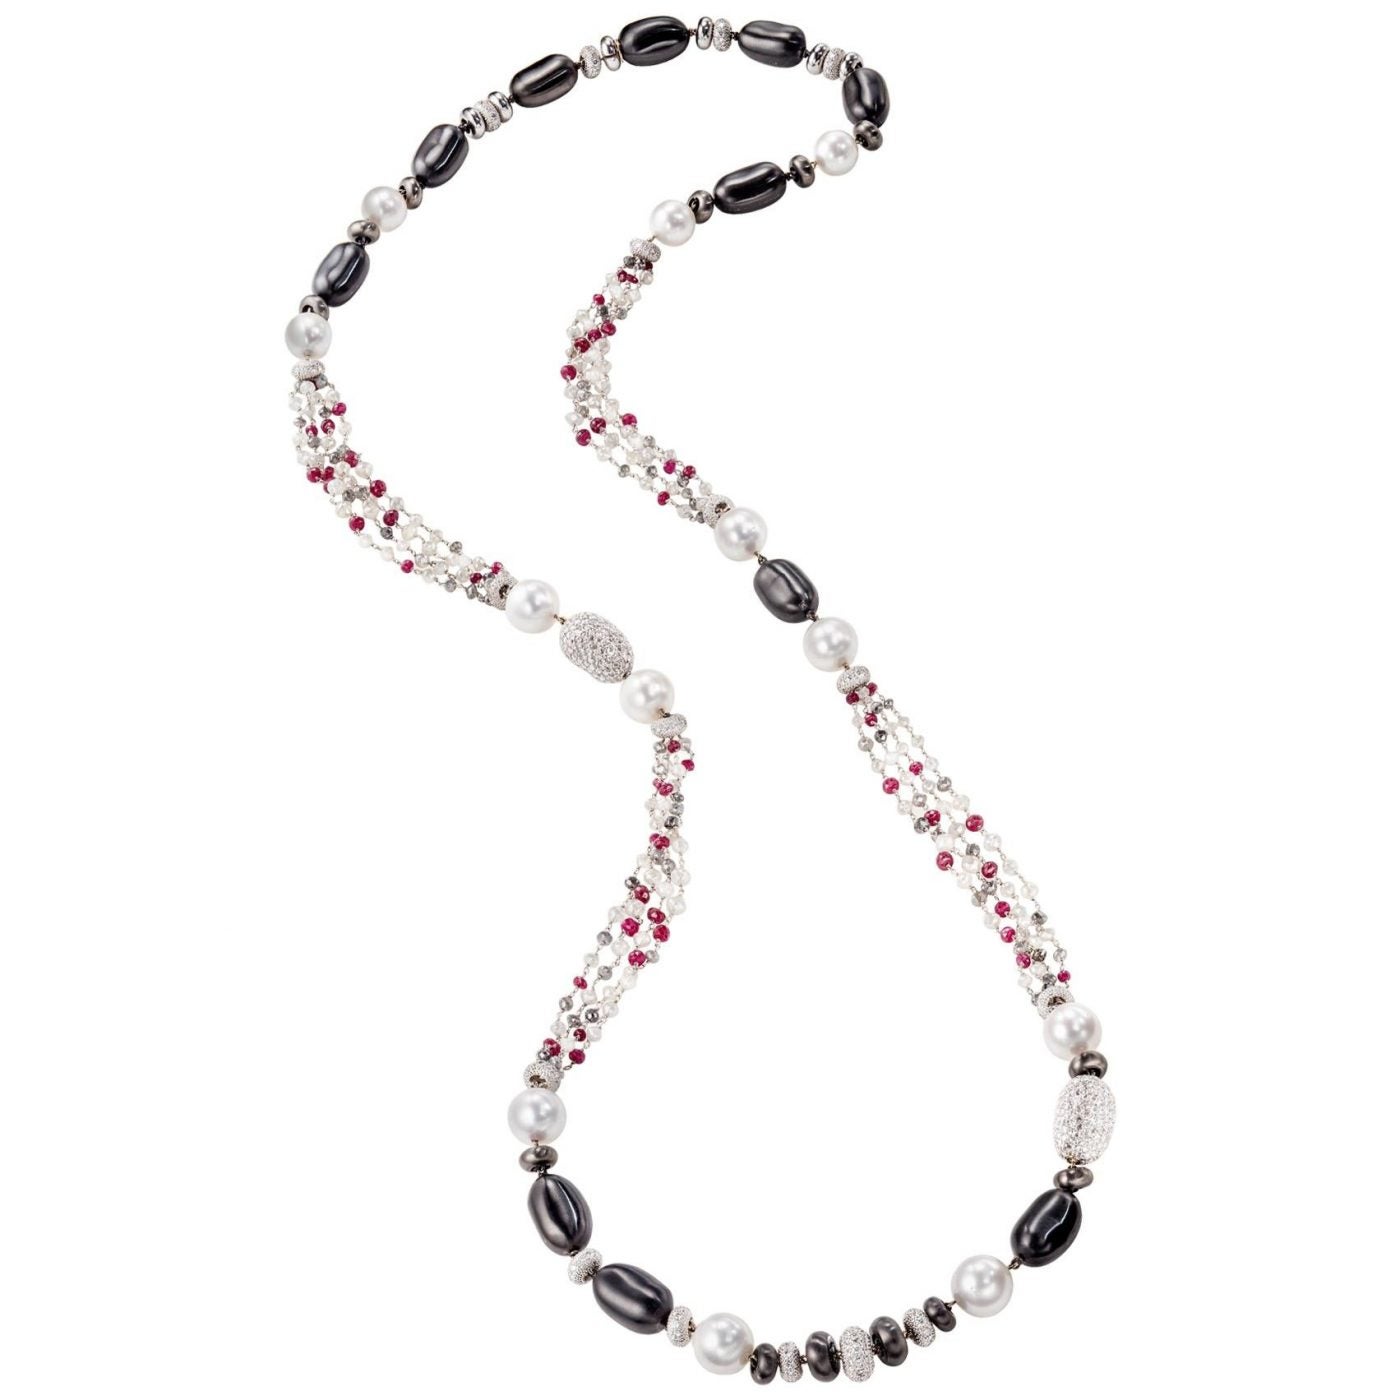 Lange Sabbadini-Halskette mit Perlen, Diamanten und Rubinen